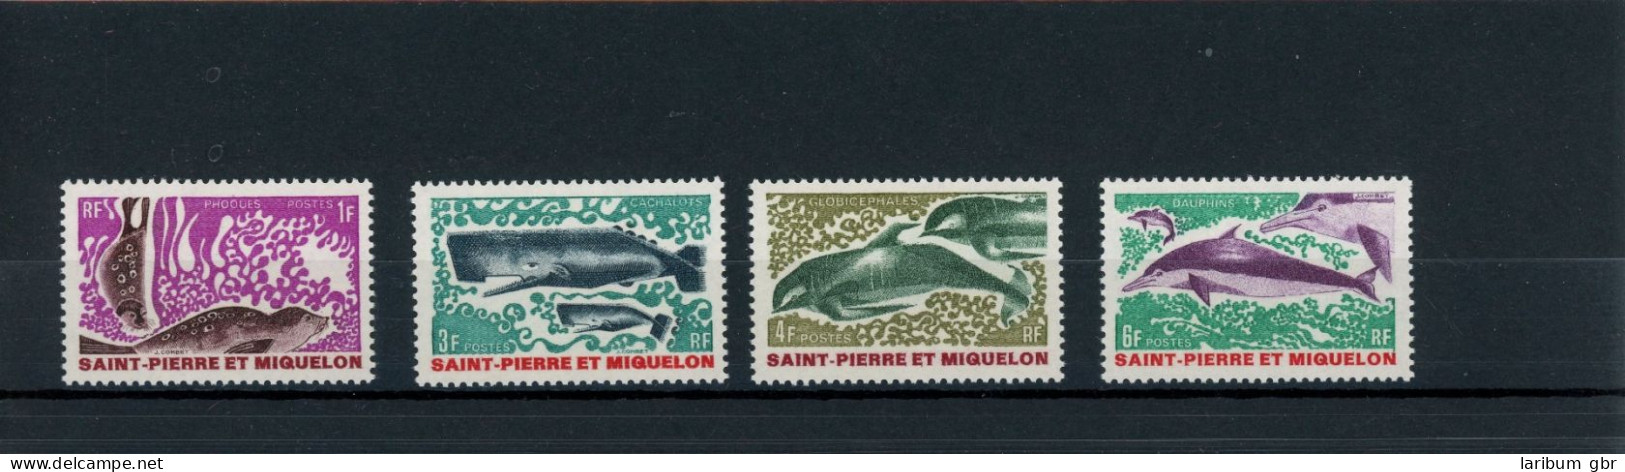 St. Pierre Und Miquelon 443-446 Postfrisch Wale #IN032 - Anguilla (1968-...)